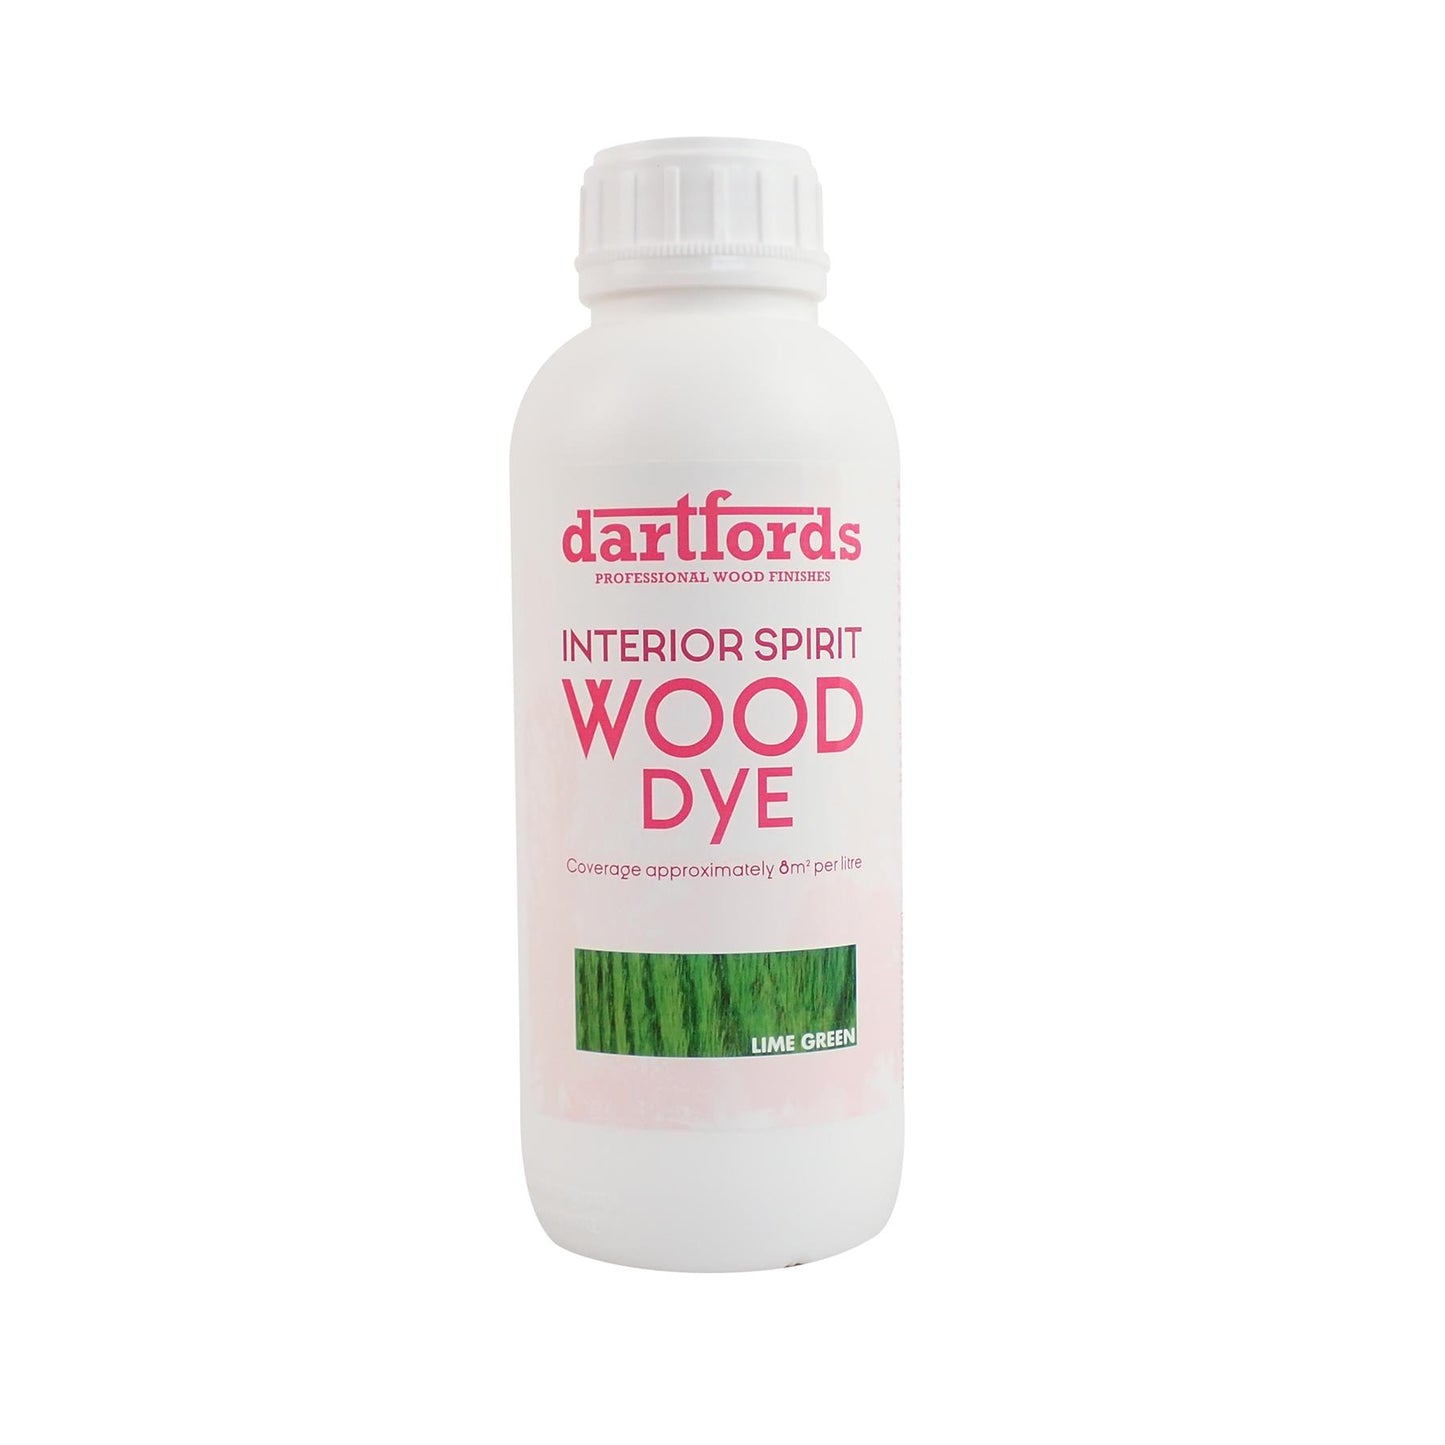 dartfords Lime Green Interior Spirit Based Wood Dye - 1 litre Tin